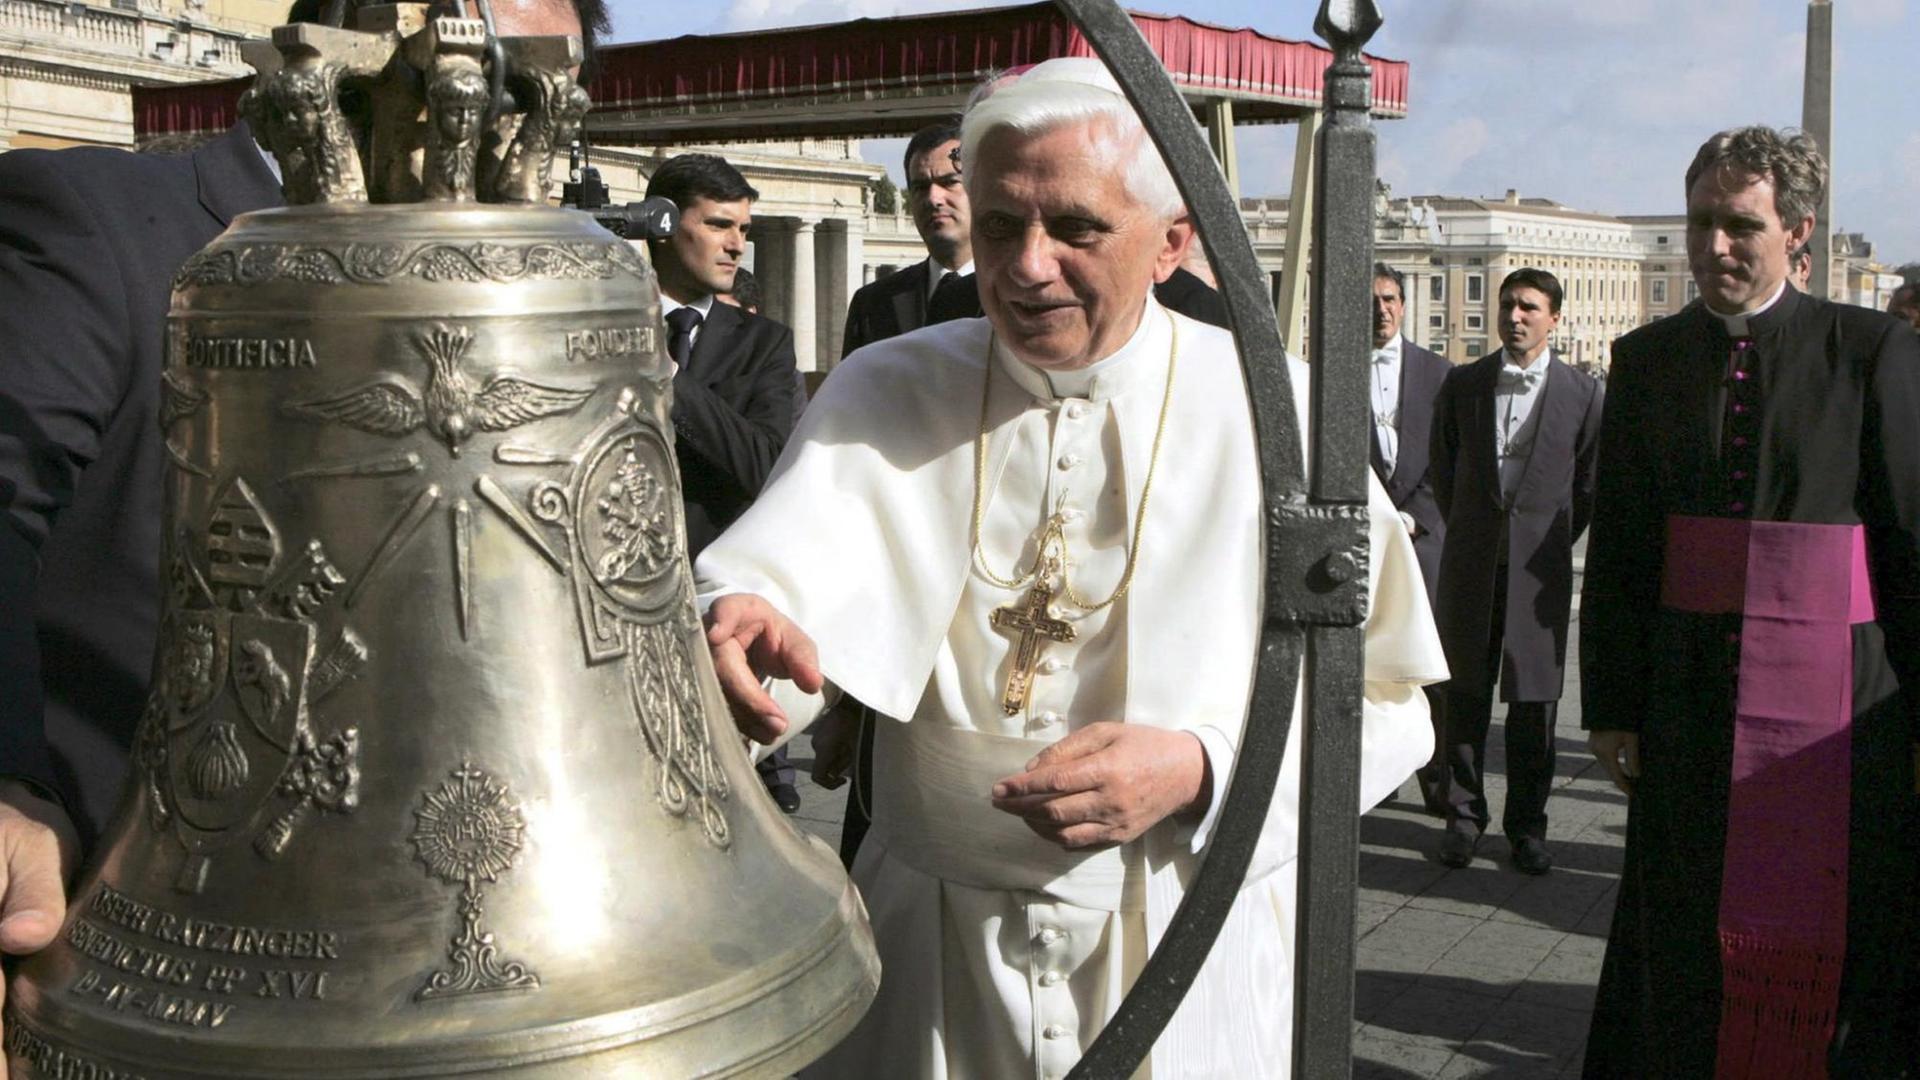 Papst Benedict XVI erhält im Zuge einer Generalaudienz auf dem Petersplatz im Jahre 2005 eine Glocke der Firma Marinelli als Geschenk.